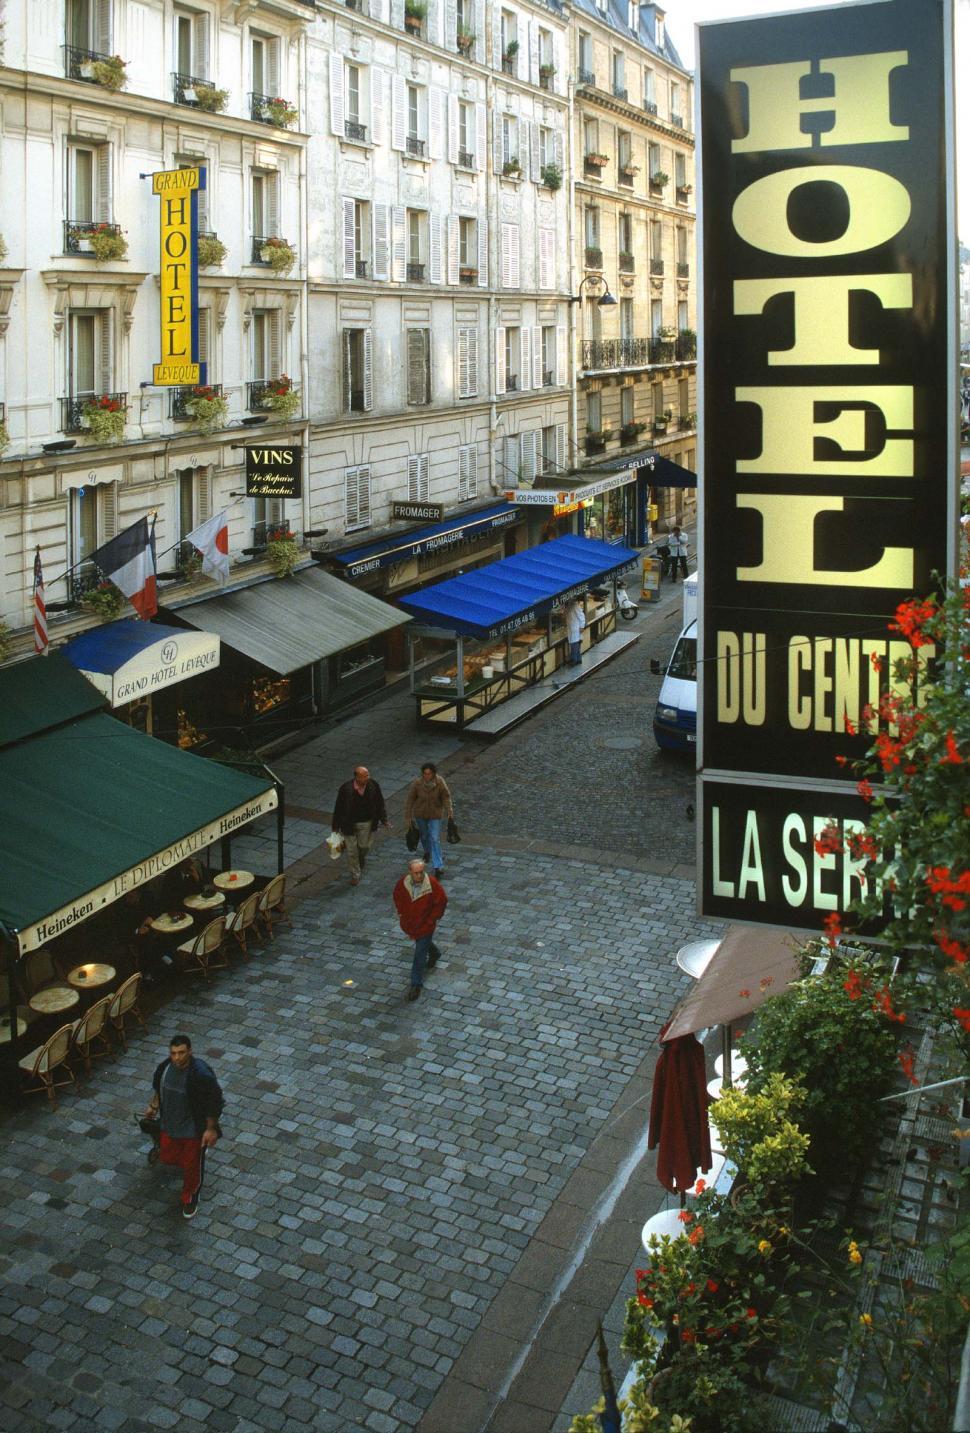 Free Image of Hotel in Paris 